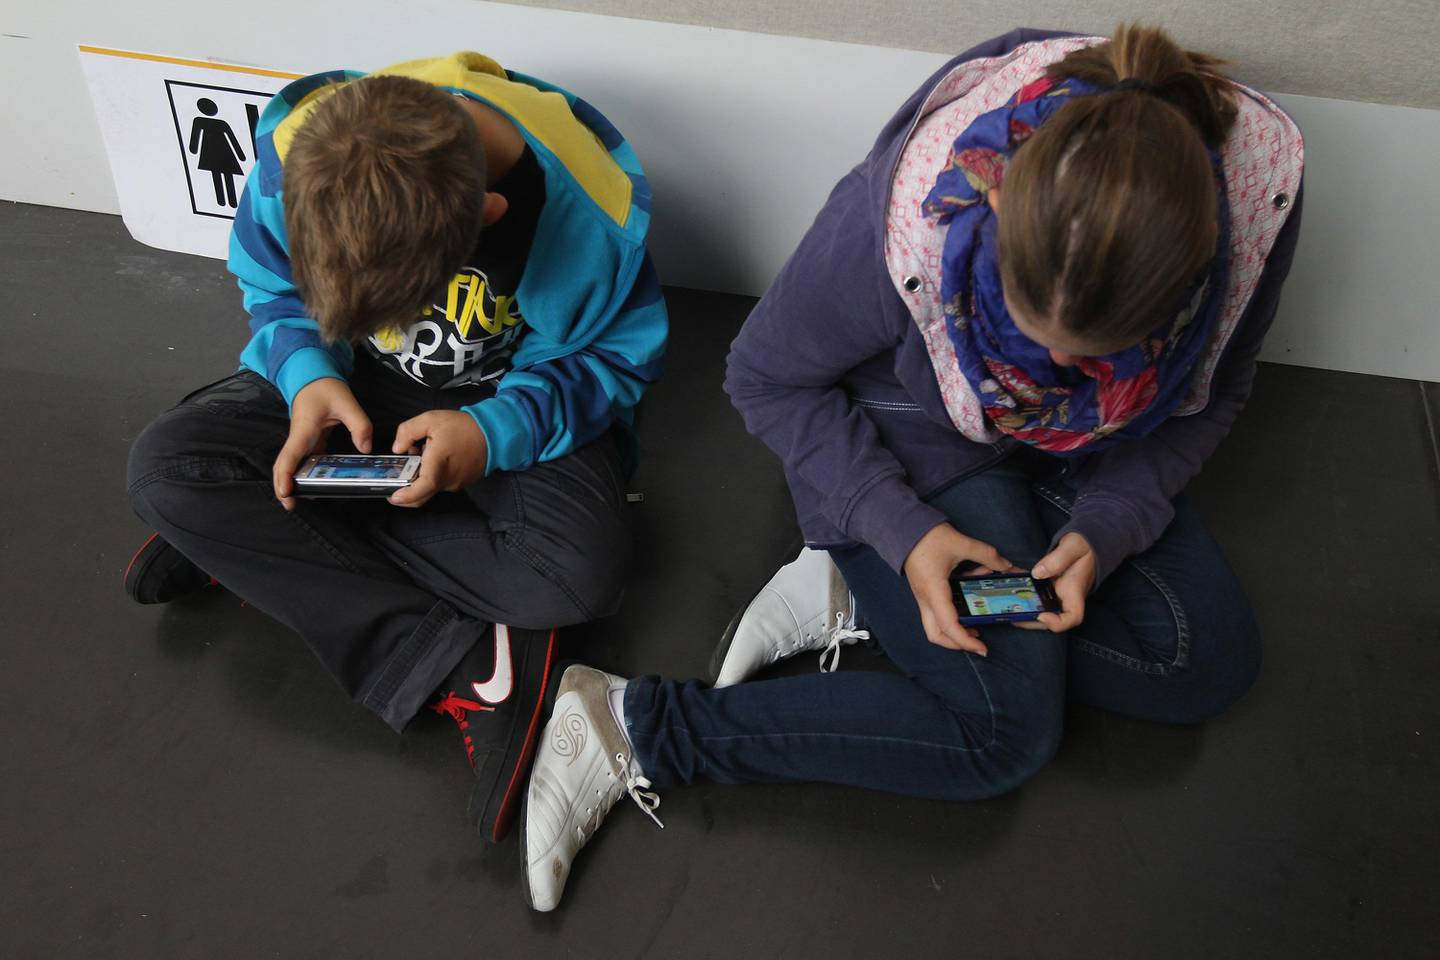 Unos niños juegan con sus smartphones mientras asisten a un acto público el 22 de septiembre de 2012 en Ruesselsheim, Alemania.